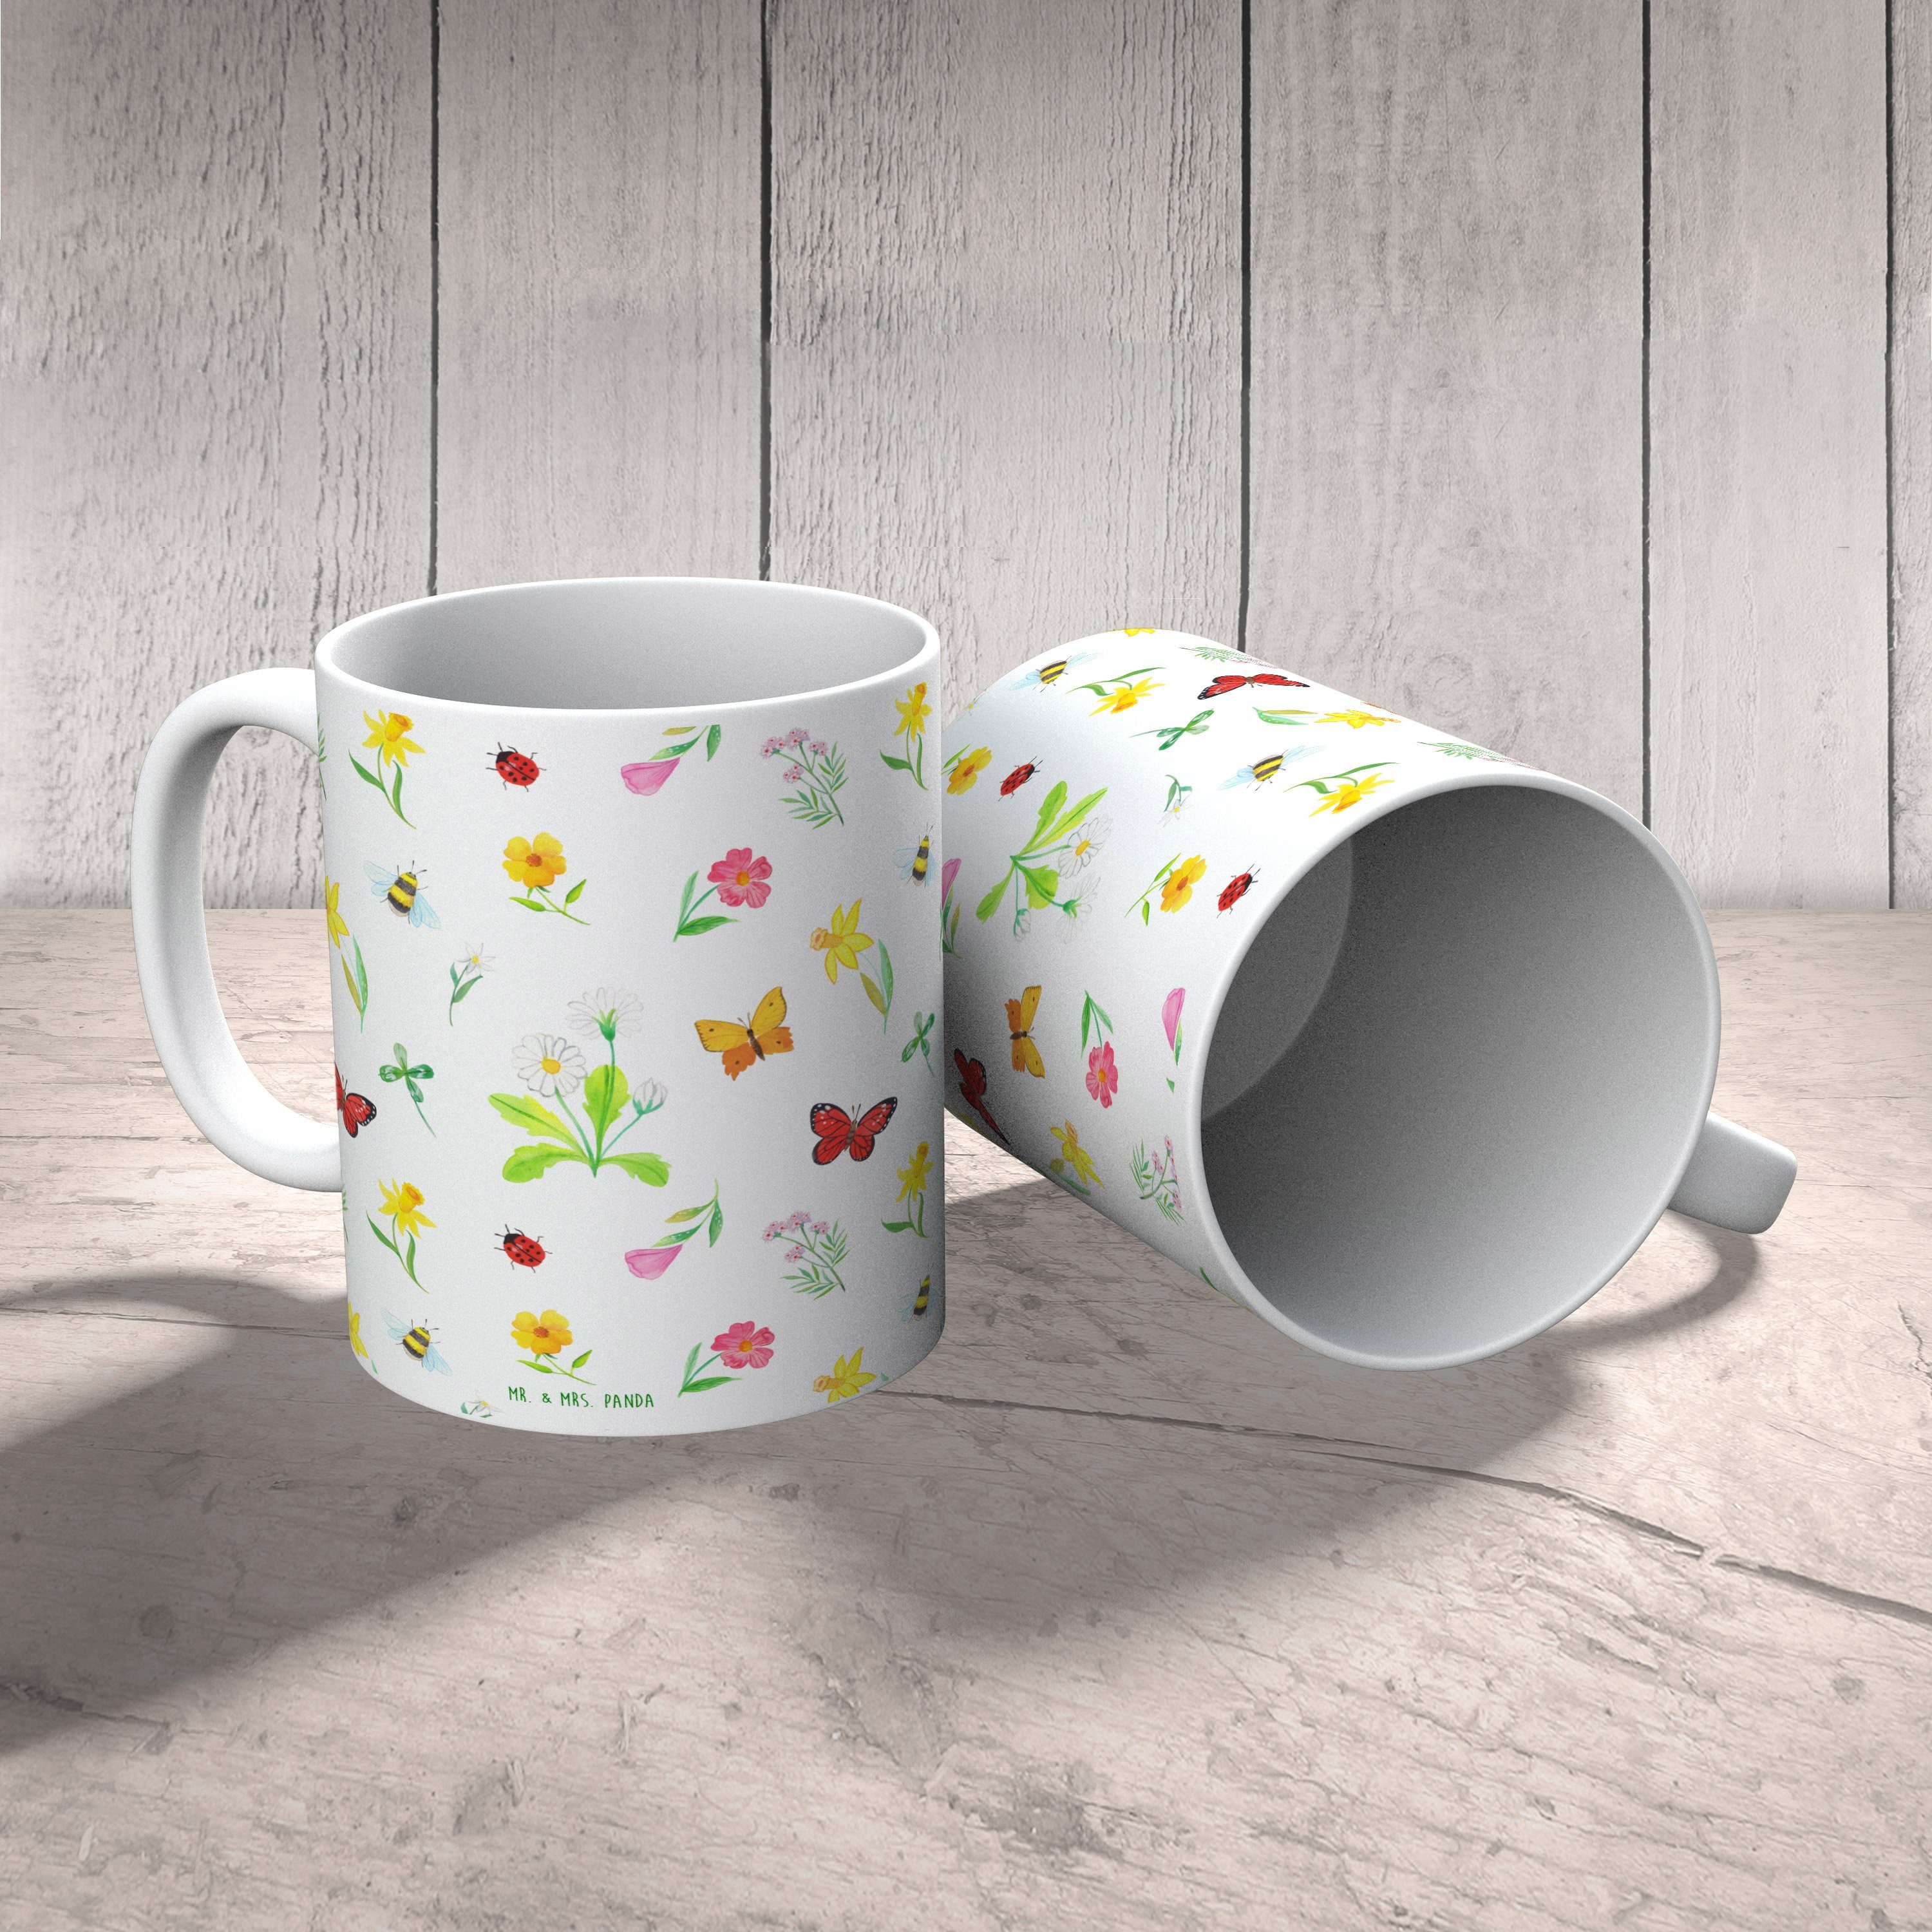 & Frühlingsgefühle - Tasse Ostern - Ostergeschenke, Mrs. Panda Geschenk, Mr. Weiß Kaffeetass, Keramik